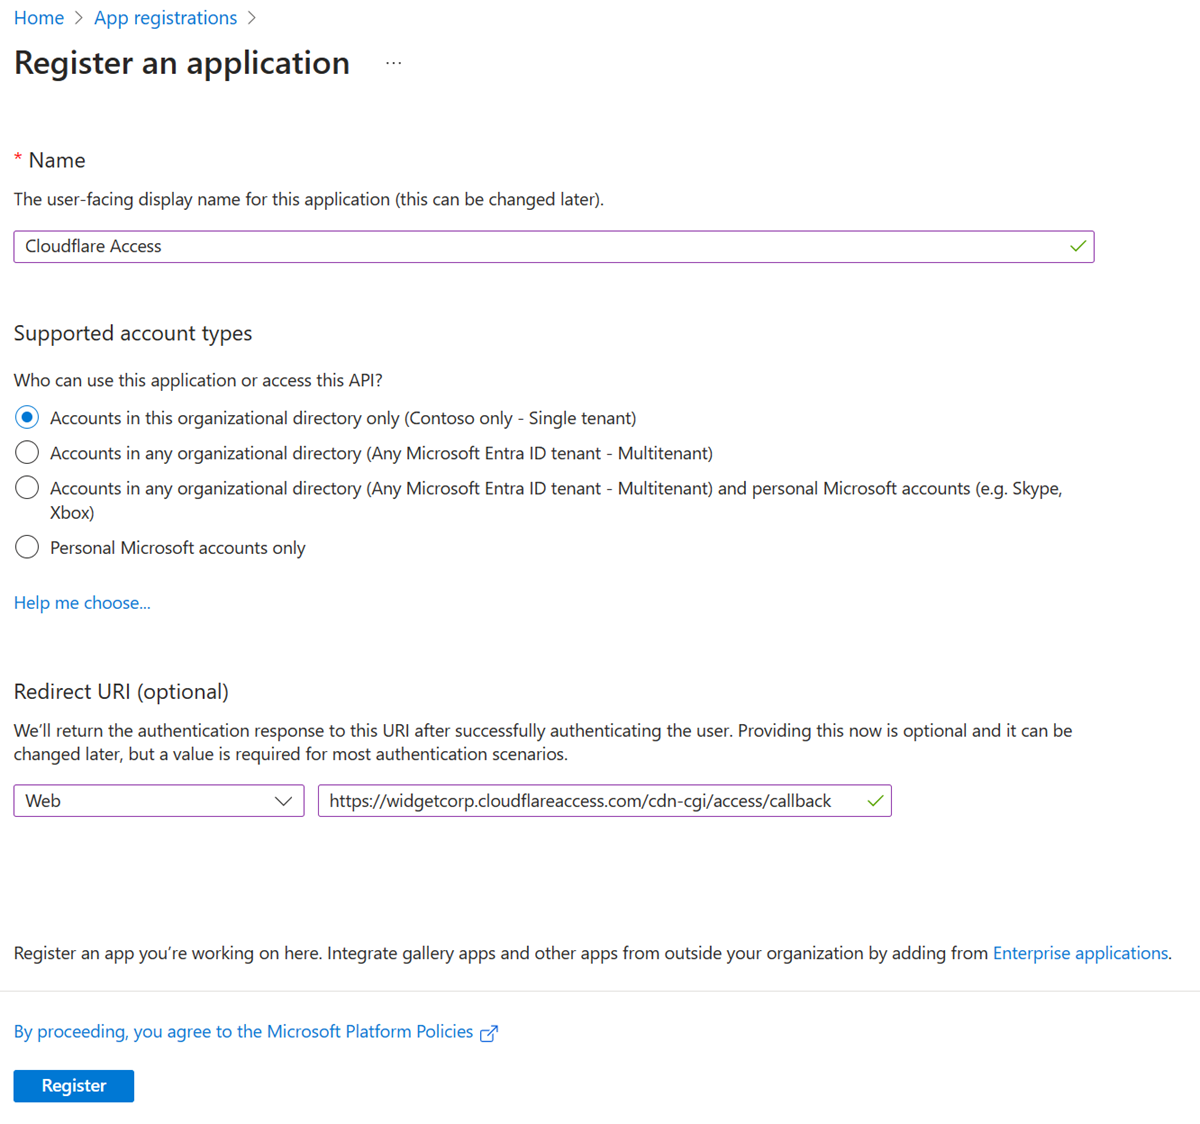 Captura de pantalla de las opciones y selecciones de Registrar una aplicación.